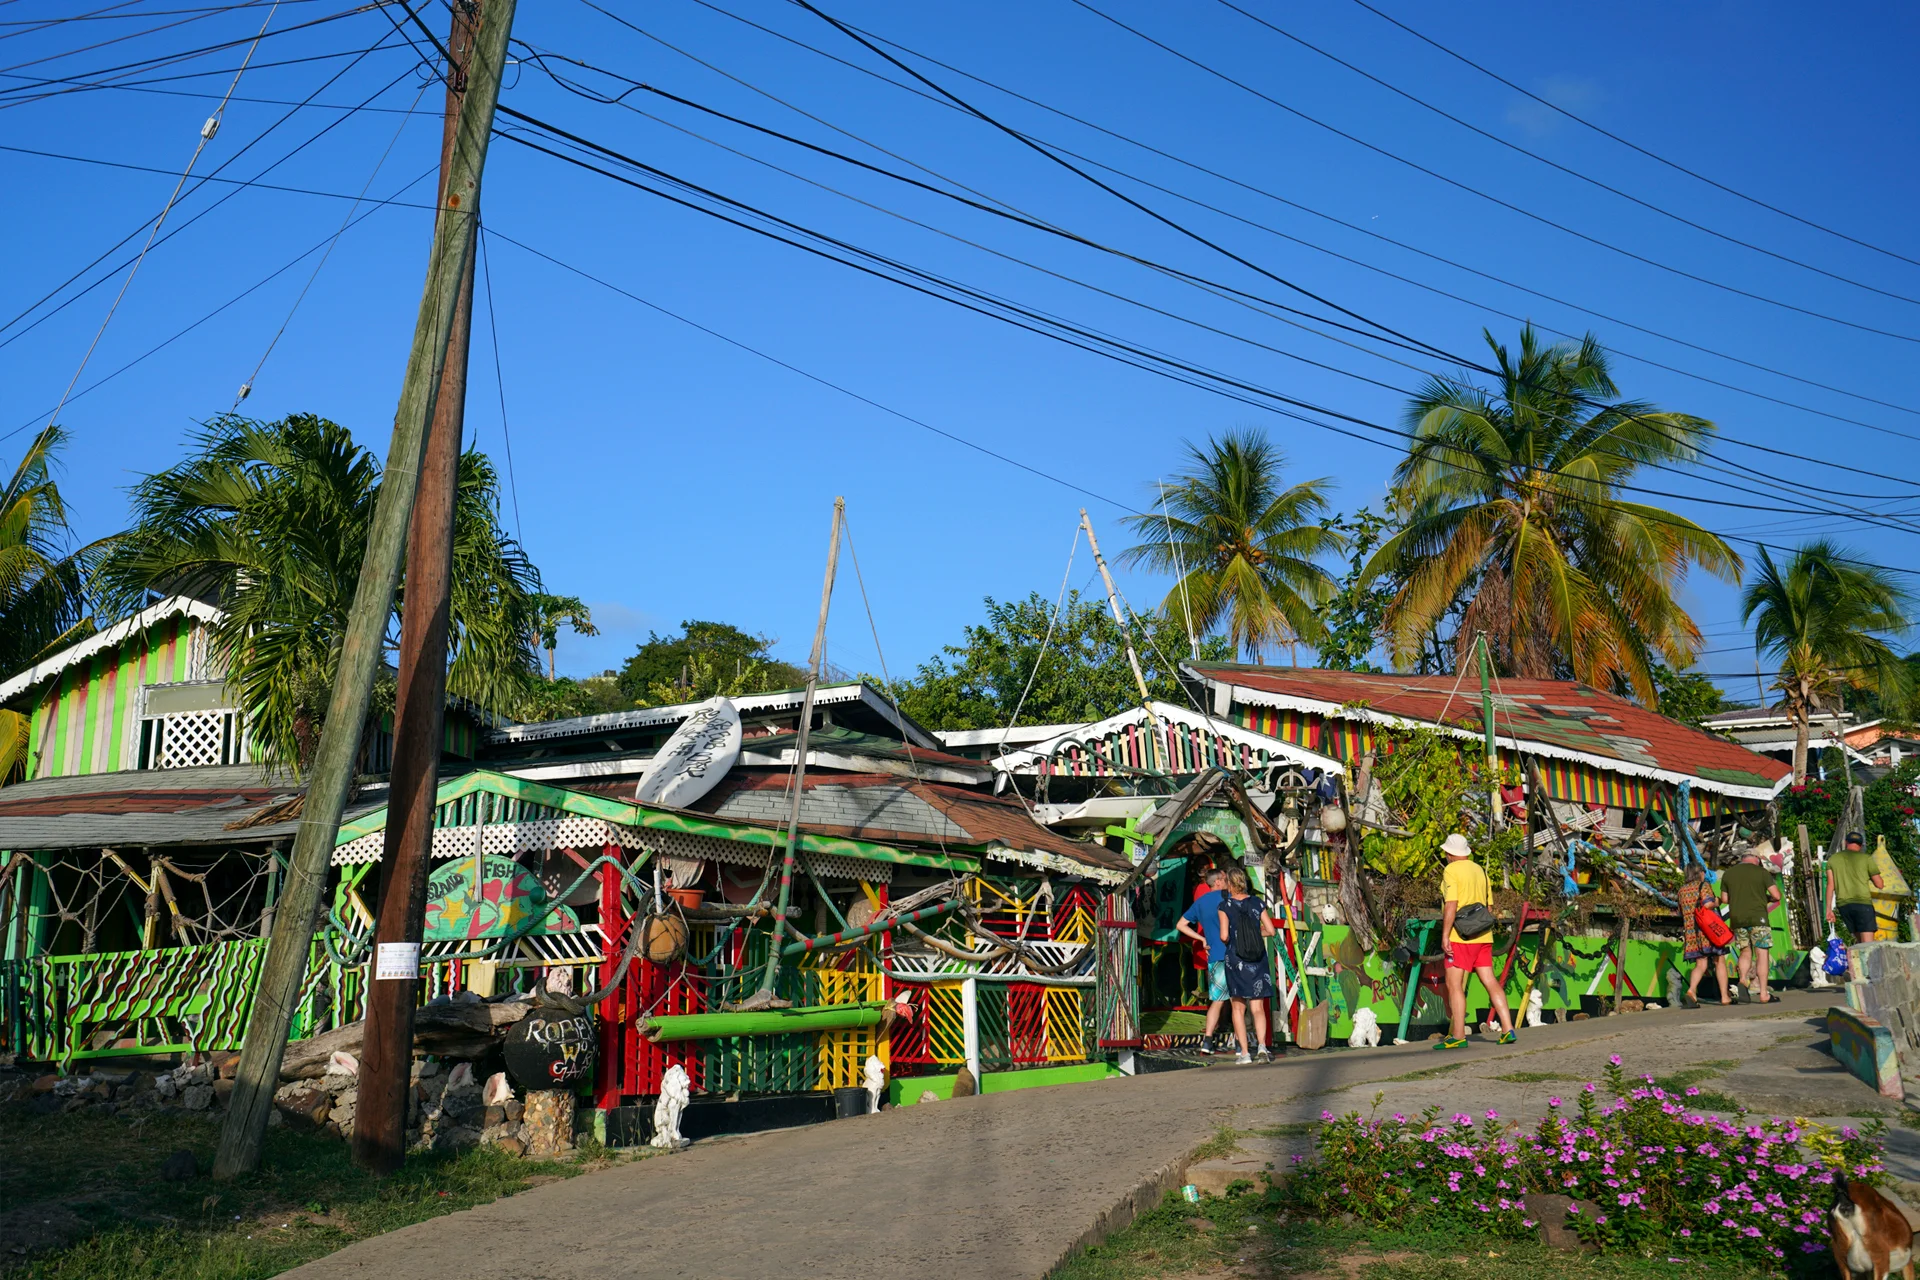 Maisons locales colorées d'une vieille ville en Martinique